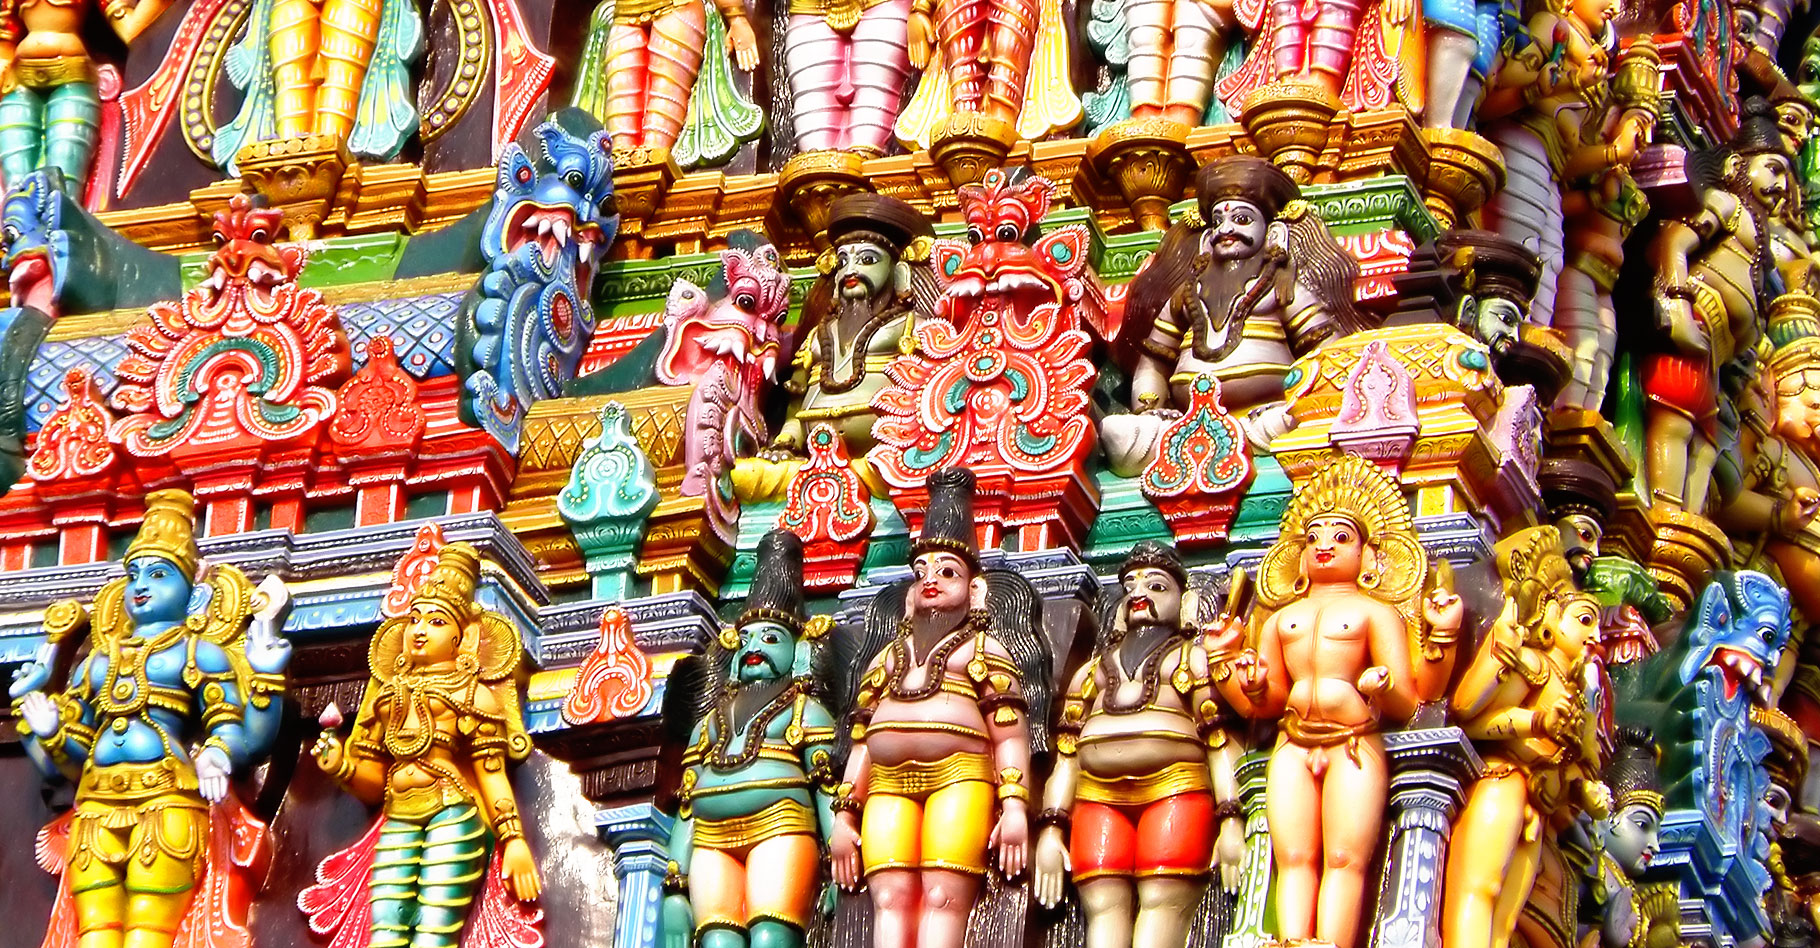 Madurai et le temple de Mînâkshî, aux couleurs éclatantes